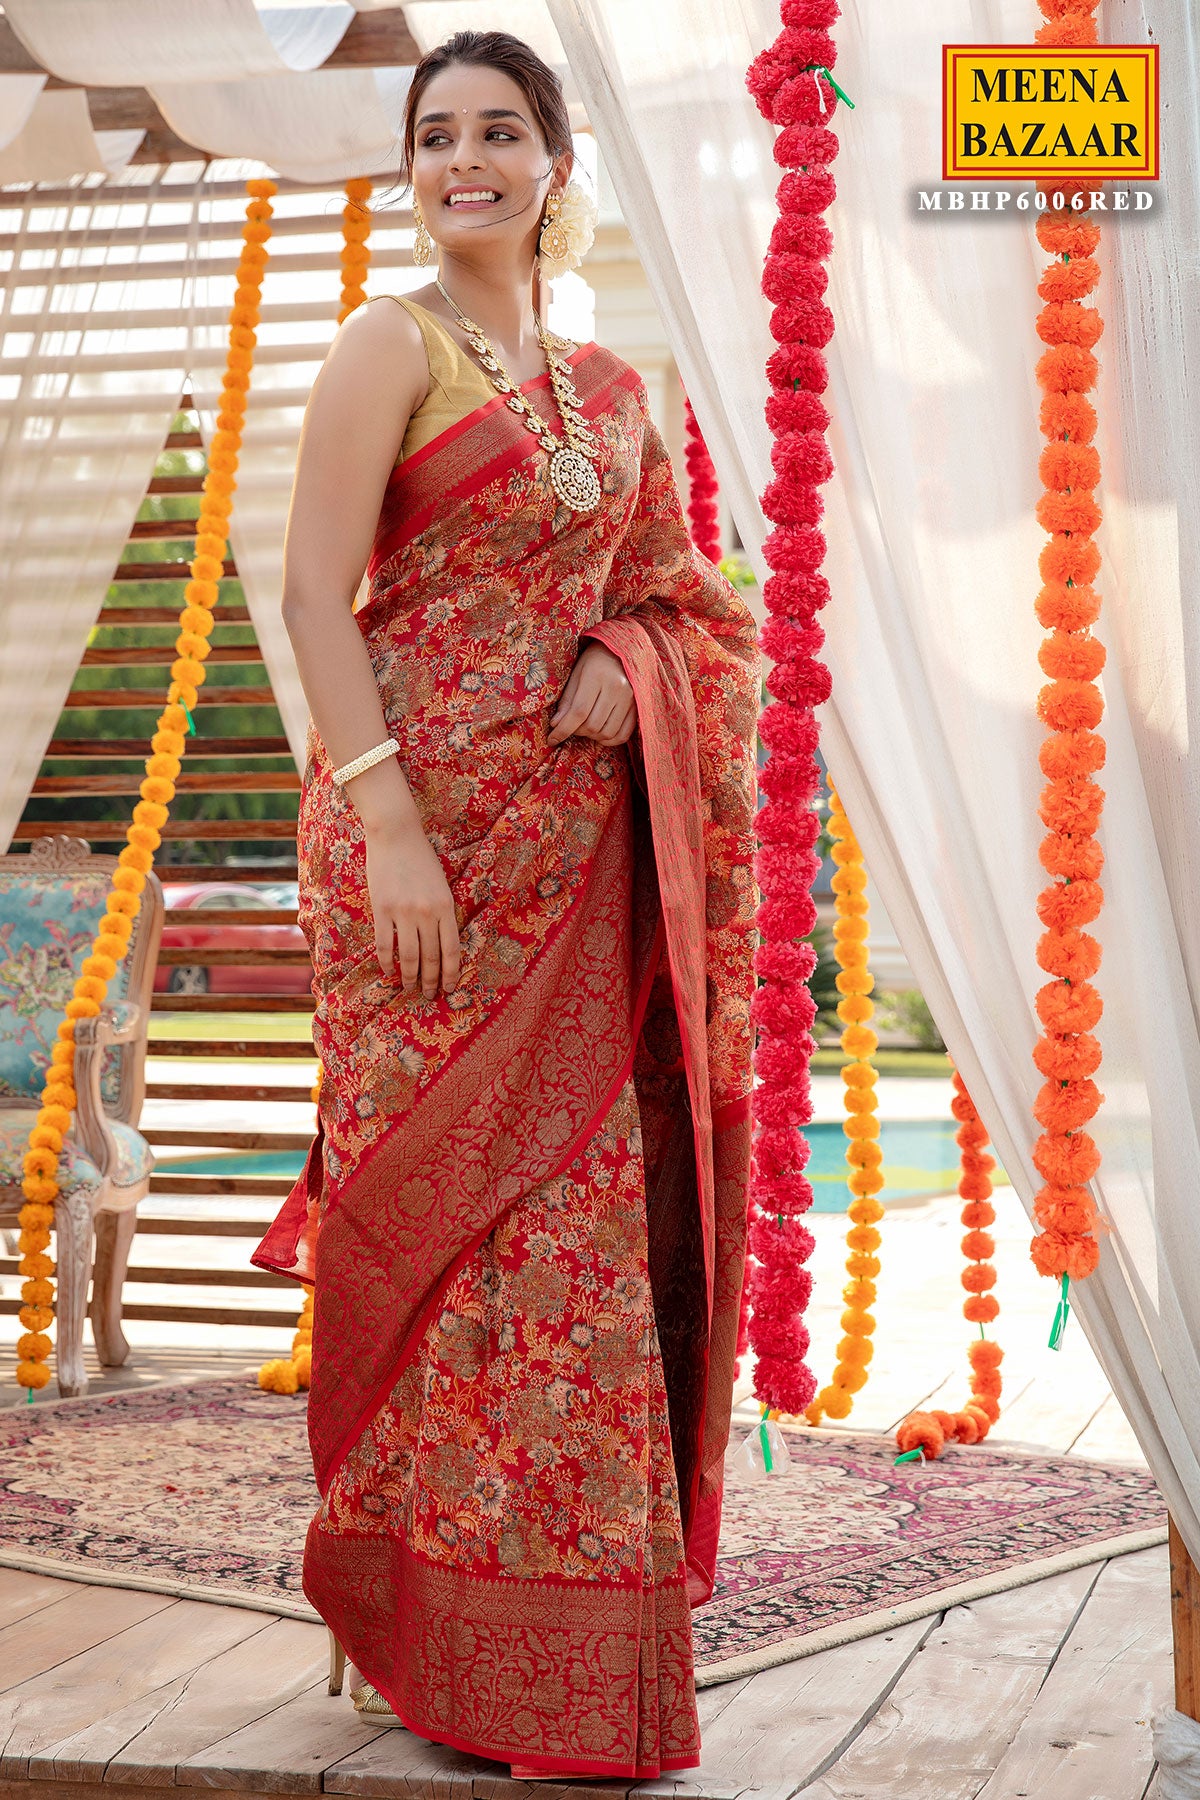 Meena Bazaar - This beautiful saree in #maroon-beige color... | Facebook